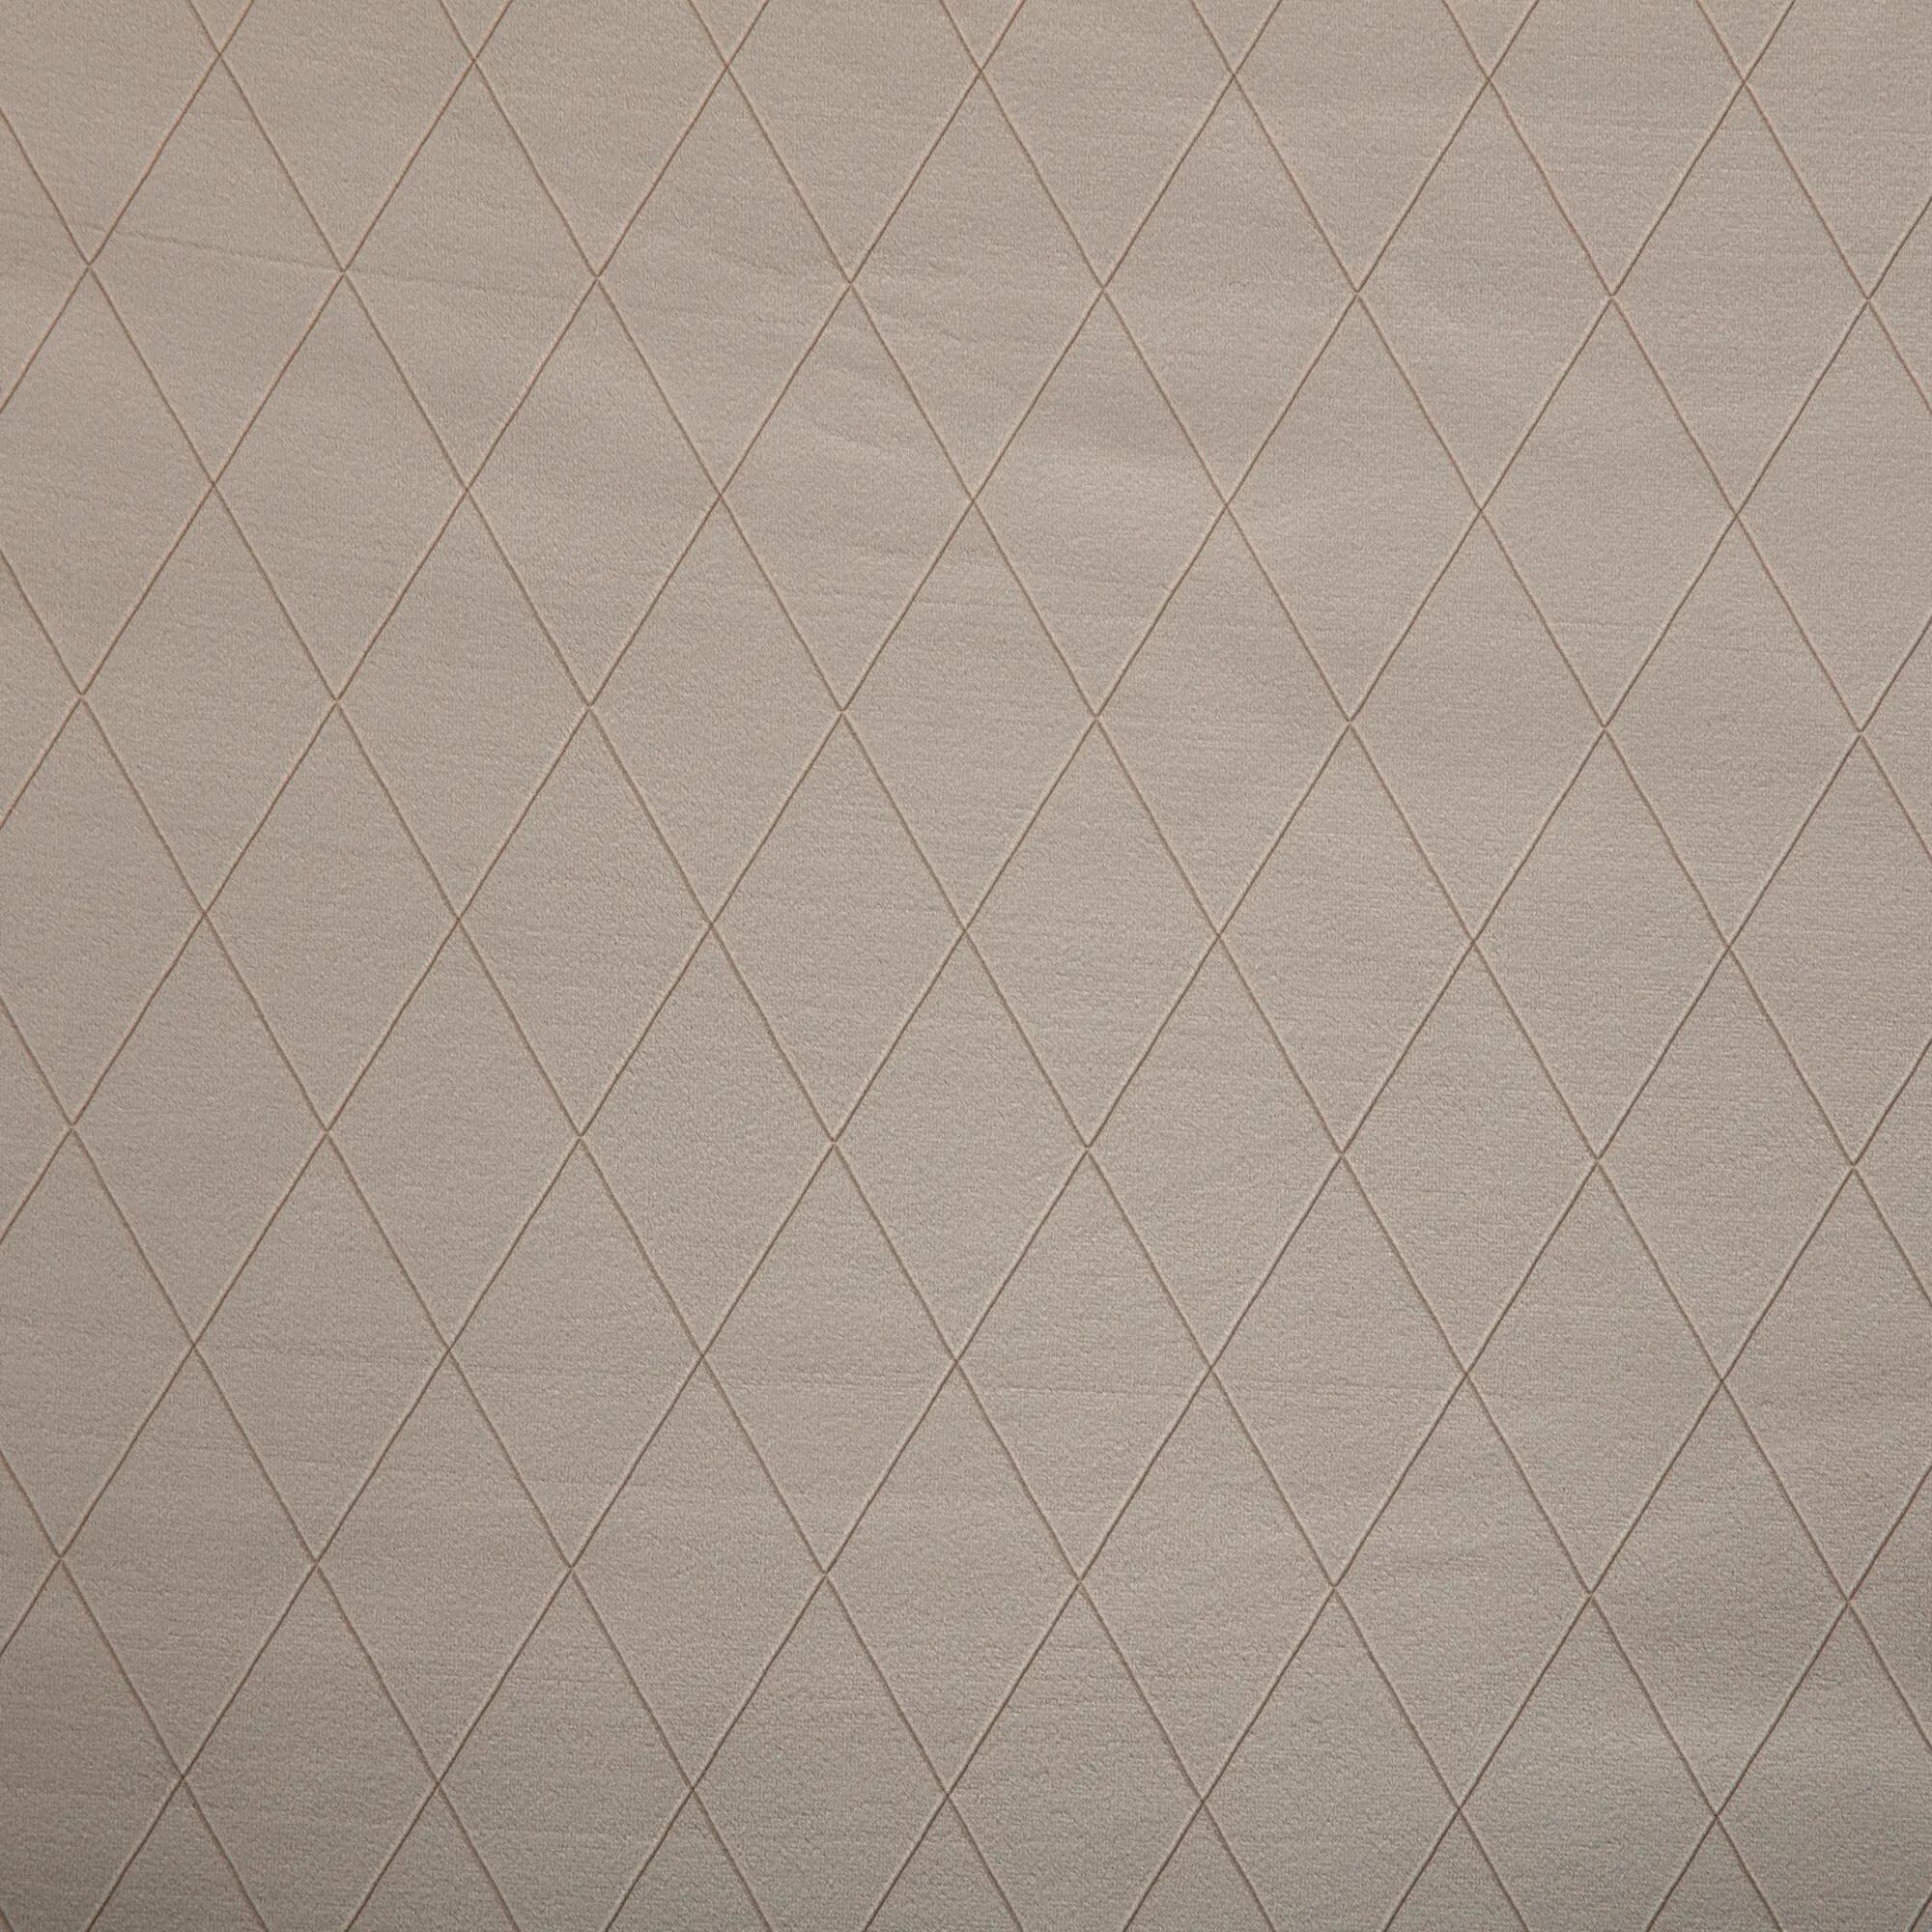 Tela al corte tapicería terciopelo rombo arena ancho 140 cm